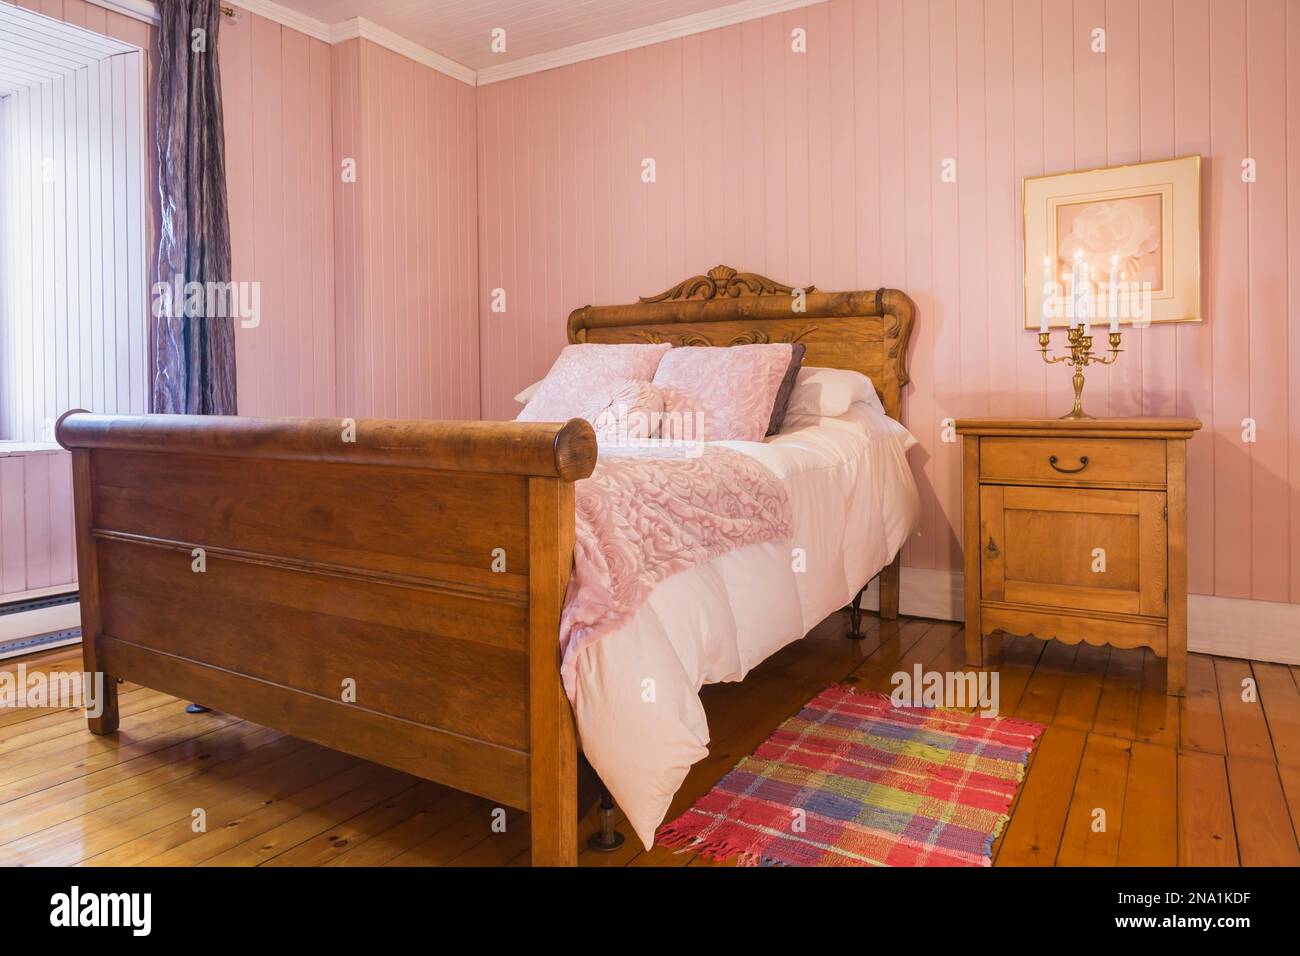 Letto a tre quarti con copriletto bianco e testiera e poggiapiedi in legno antico con dettagli intagliati, tavolino nella camera da letto con pareti in rosa. Foto Stock